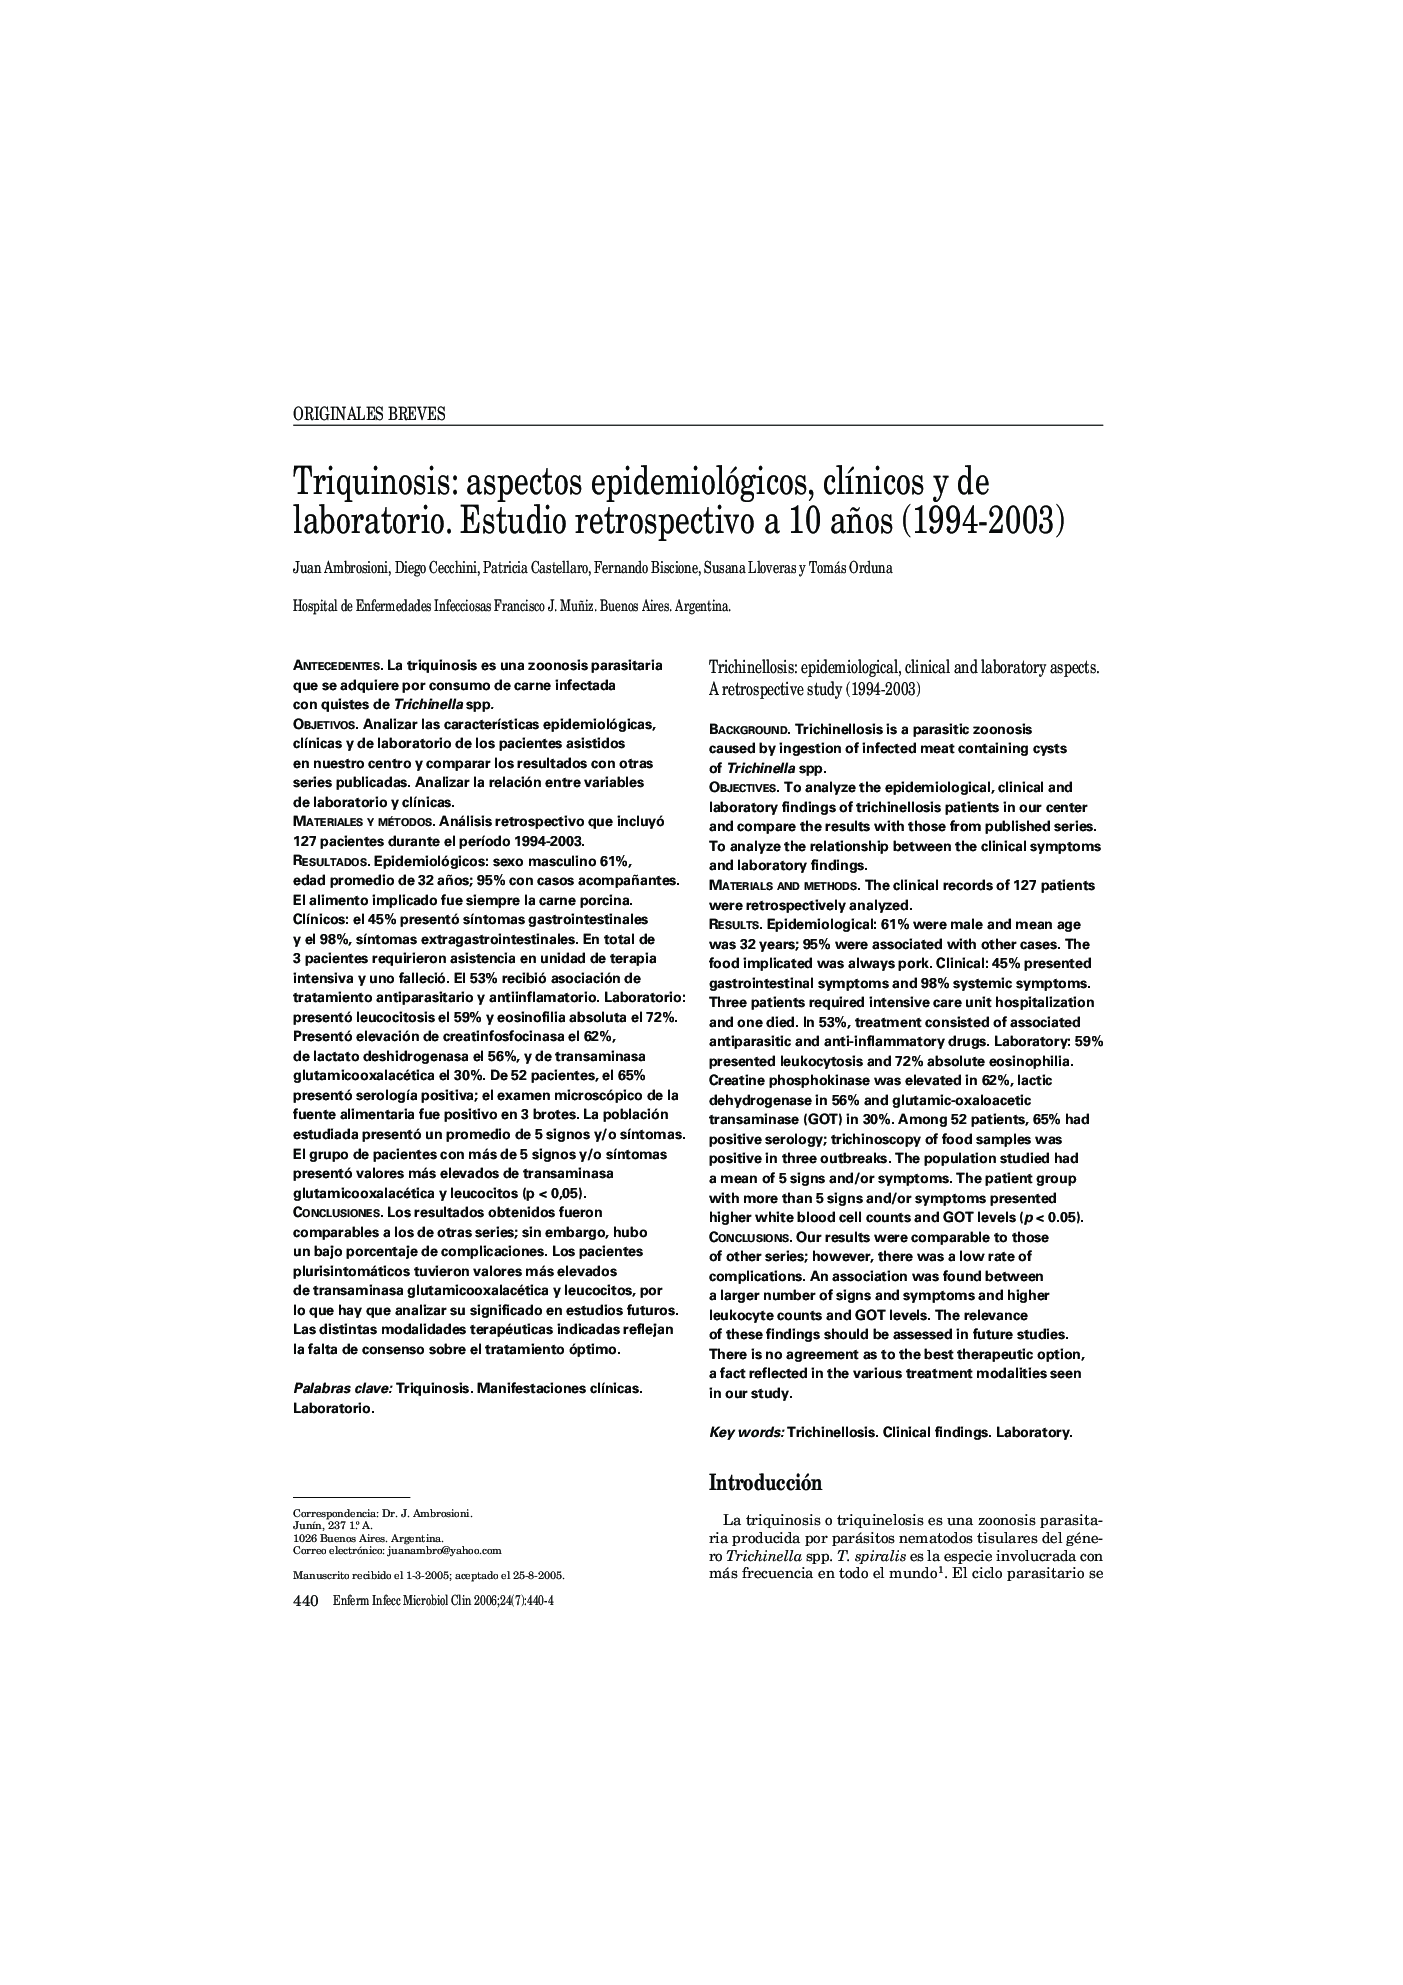 Triquinosis: aspectos epidemiológicos, clÃ­nicos y de laboratorio. Estudio retrospectivo a 10 años (1994-2003)